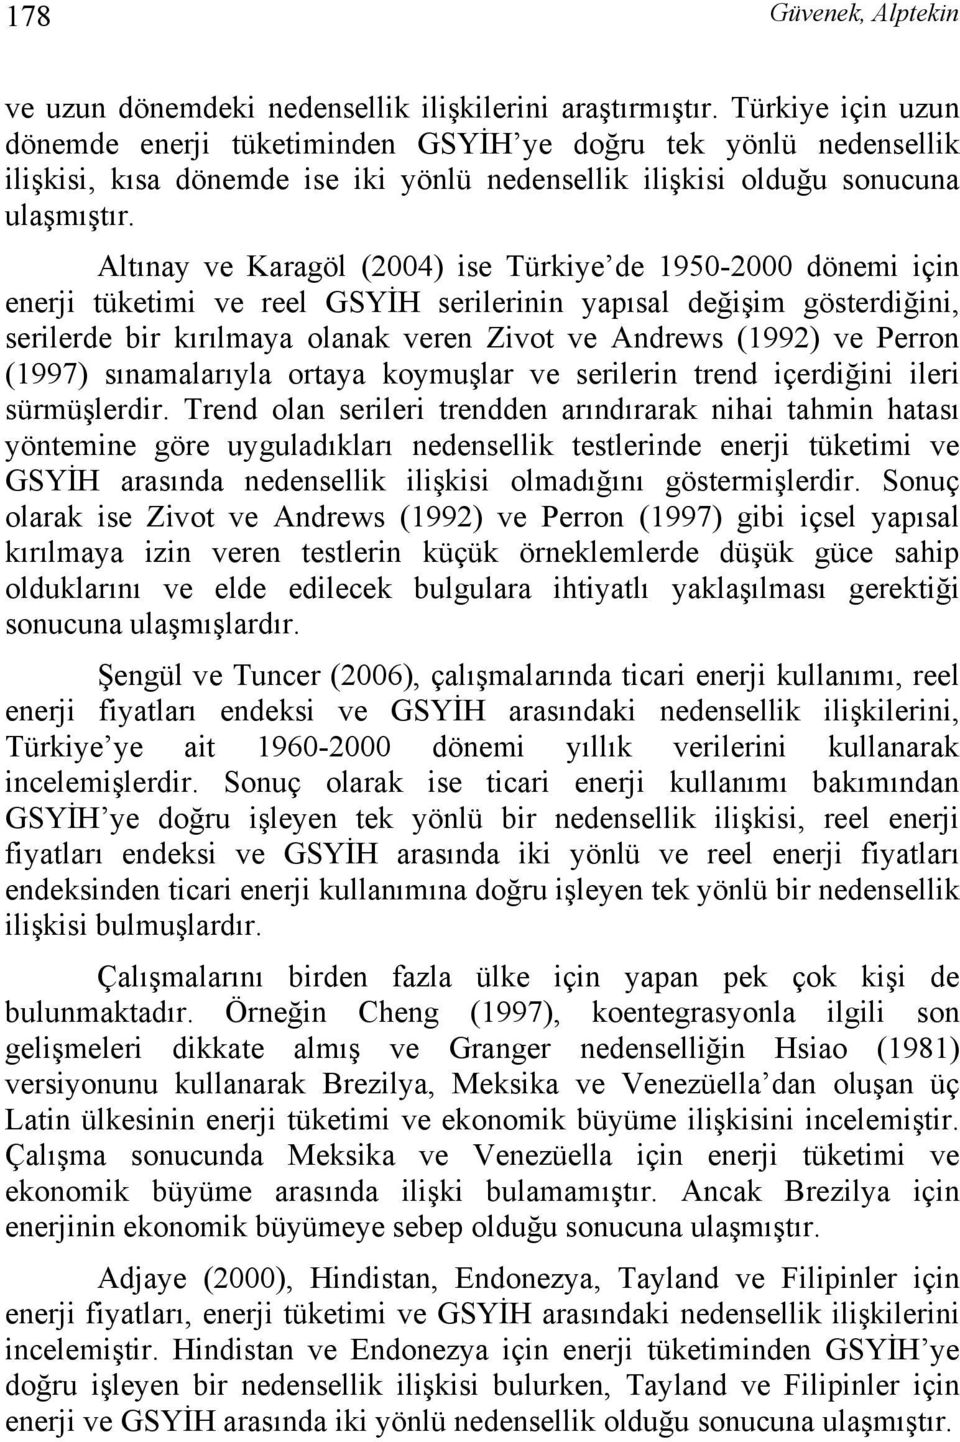 Altınay ve Karagöl (2004) ise Türkiye de 1950-2000 dönemi için enerji tüketimi ve reel GSYİH serilerinin yapısal değişim gösterdiğini, serilerde bir kırılmaya olanak veren Zivot ve Andrews (1992) ve